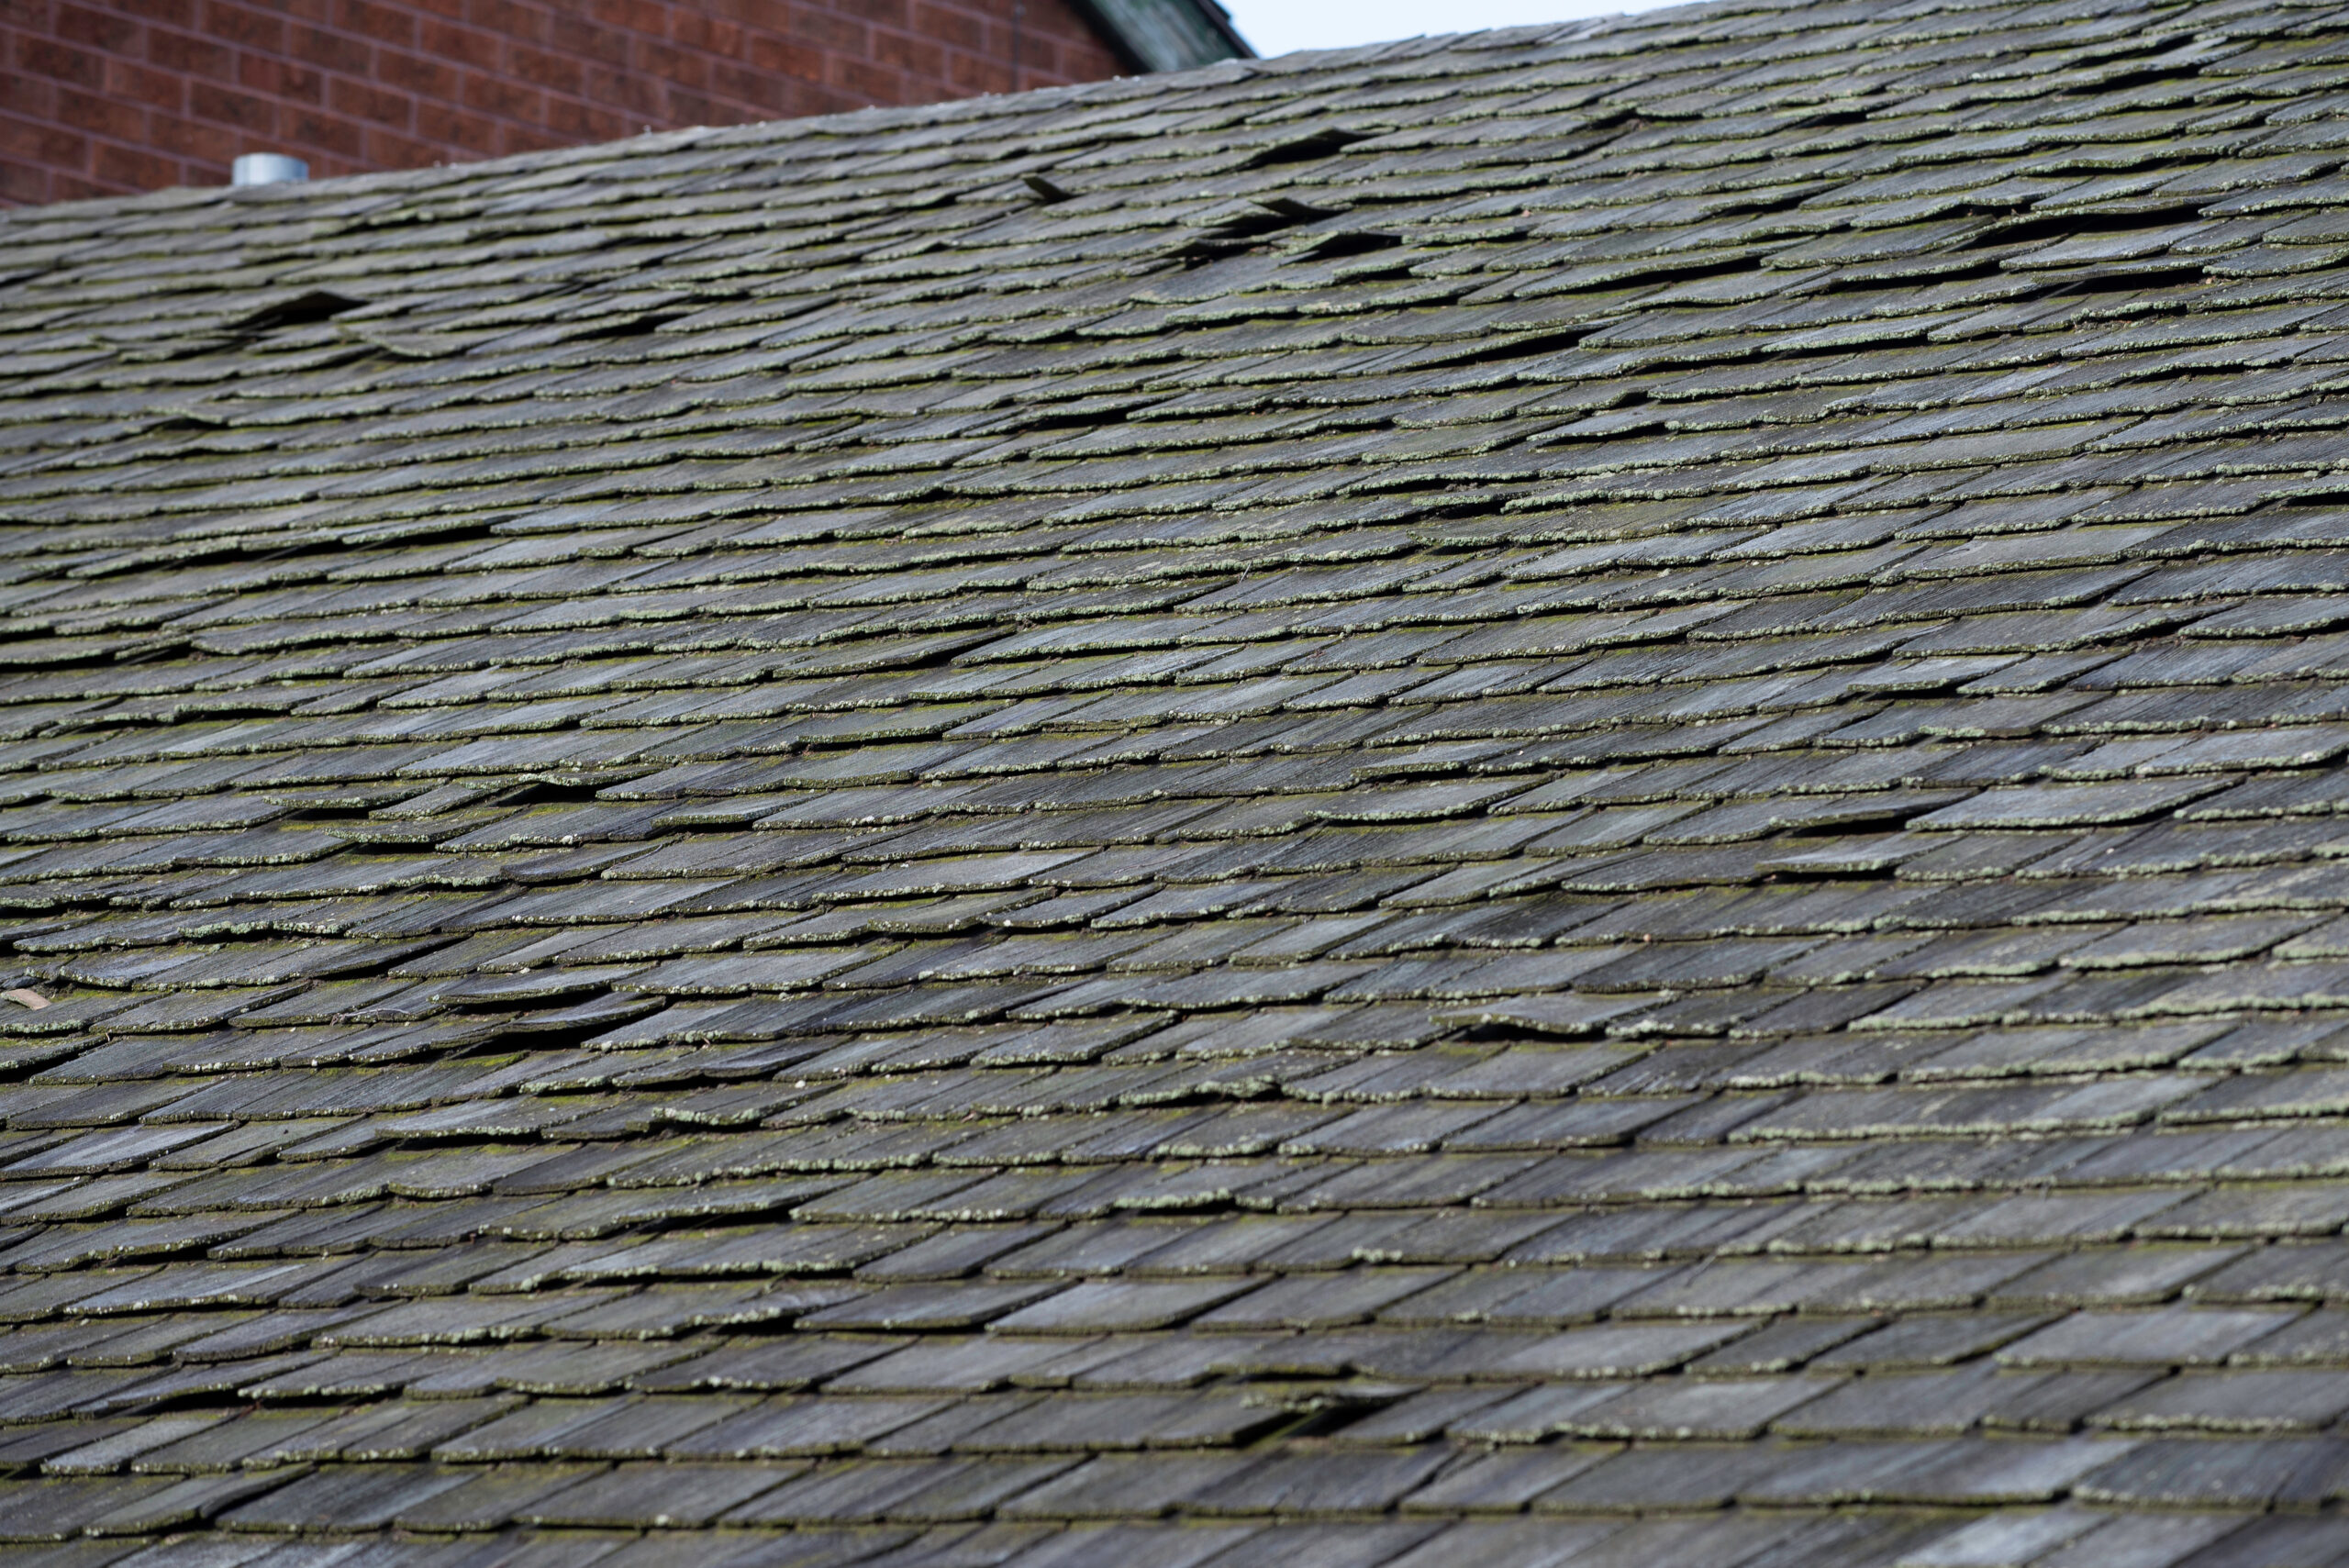 Old, damaged shingle roof